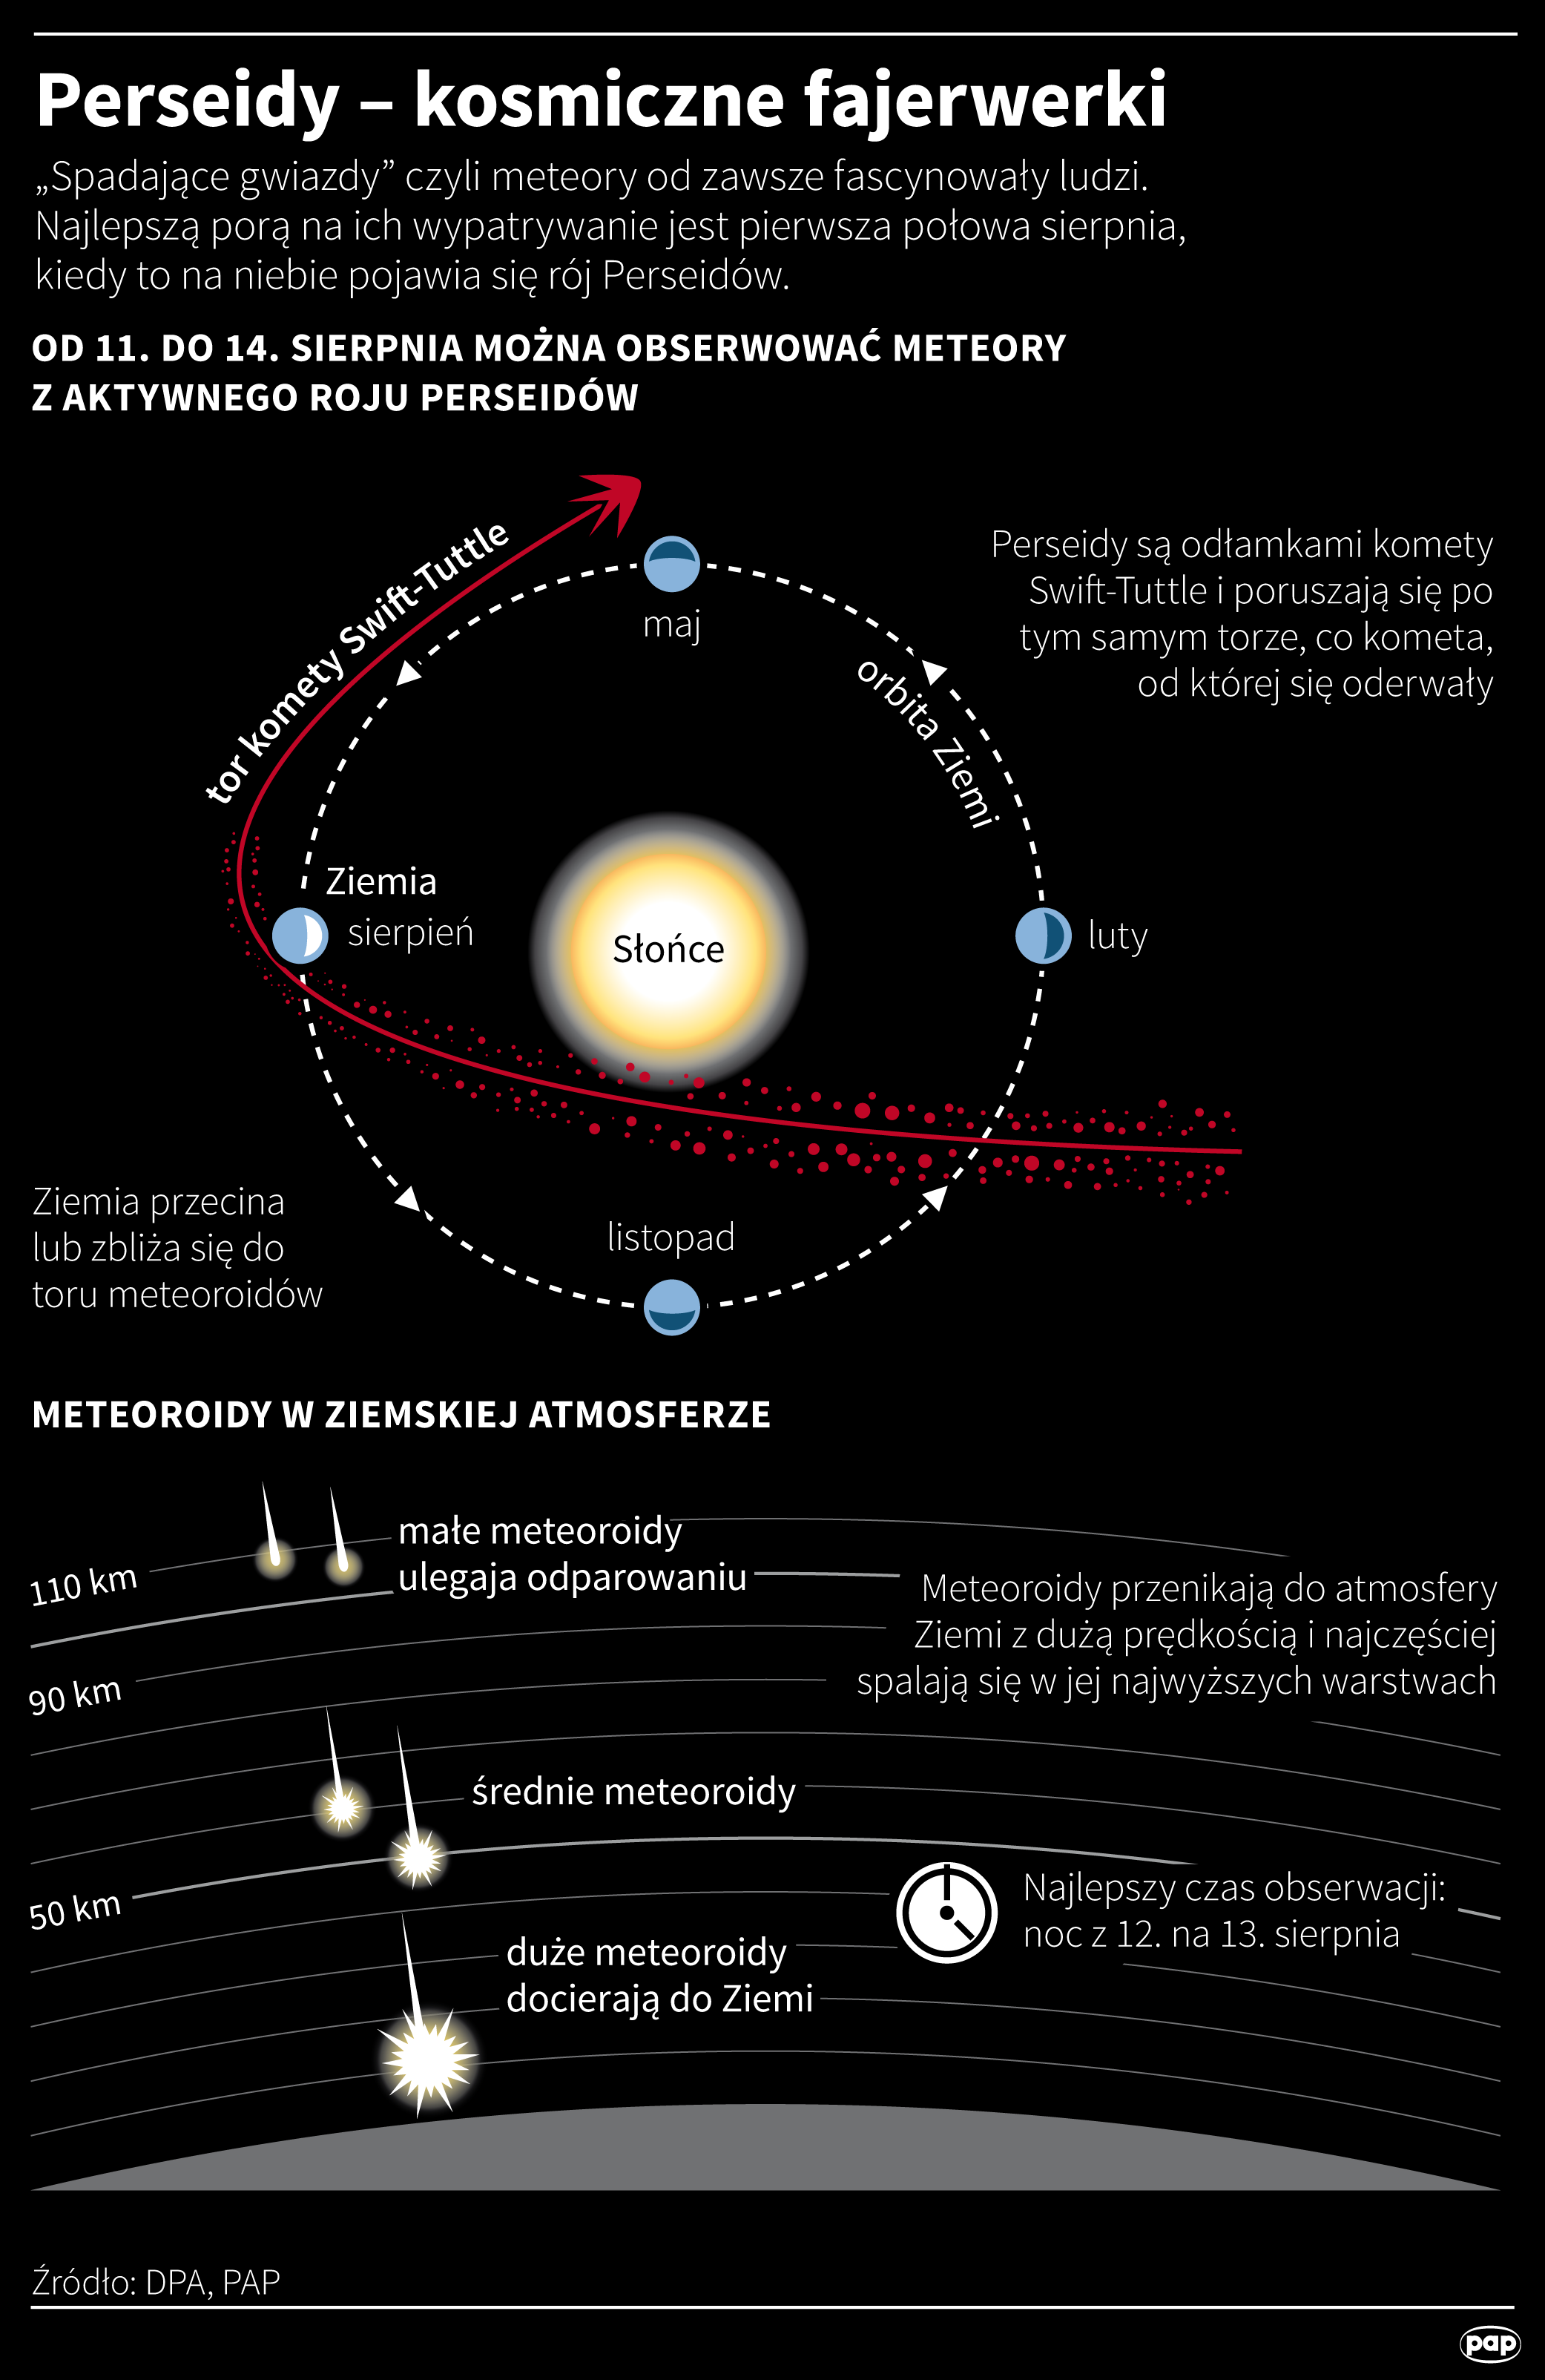 - Его максимум ожидается в ночь с 12 на 13 августа, но интенсивность этого явления не будет слишком высокой в ​​этом году - по оценкам, около 100 «падающих звезд» может появиться в час, - сказал астроном д-р Томаш Бани из Планетария EC1 в лодки